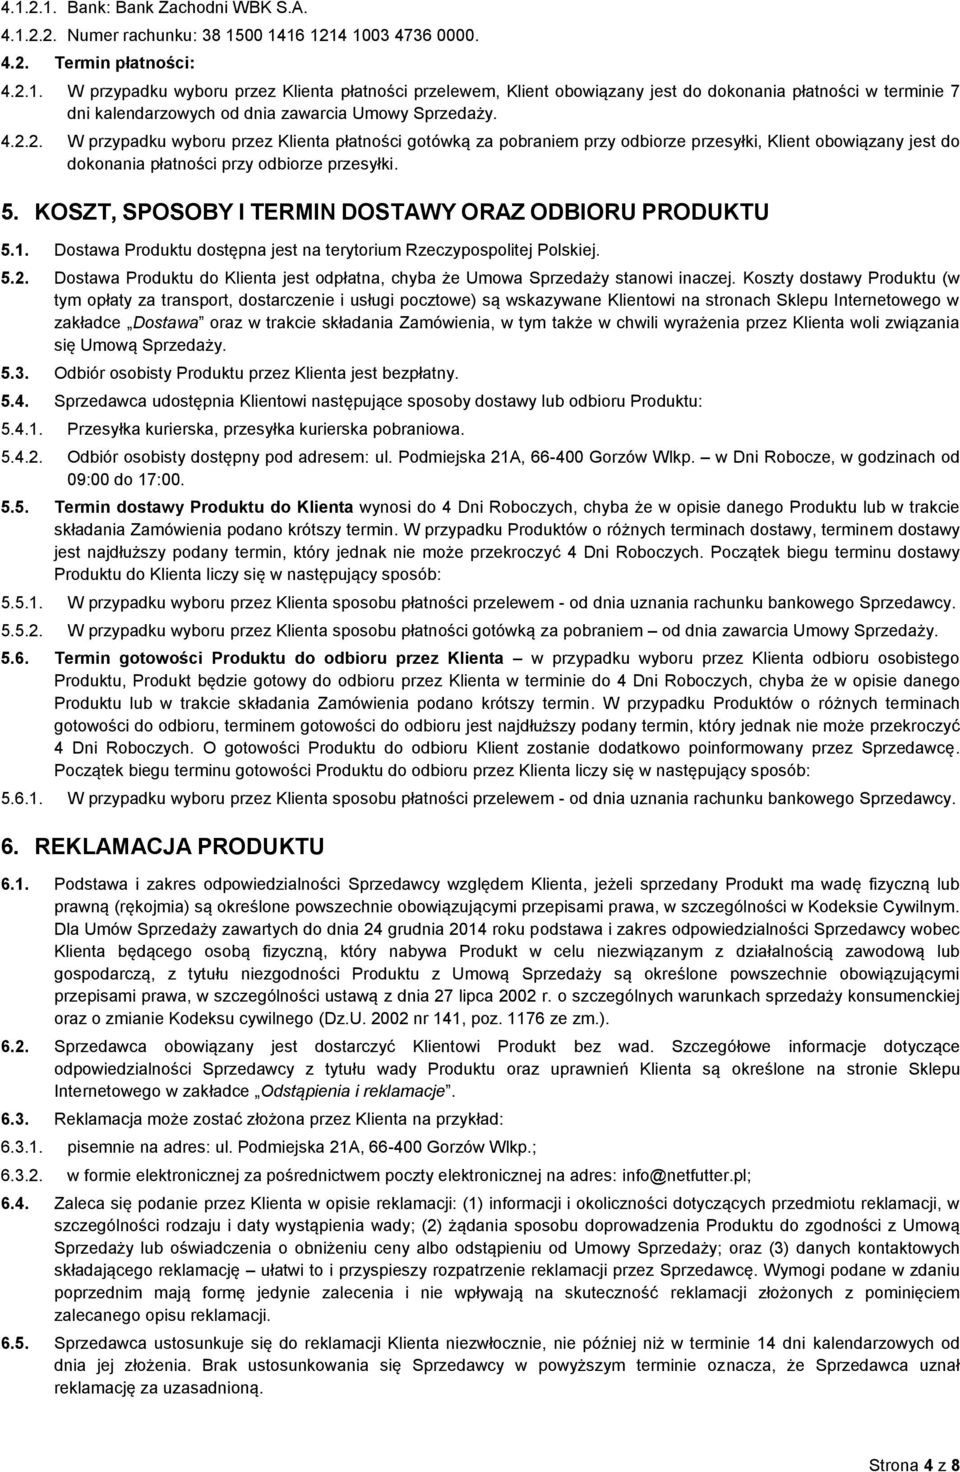 KOSZT, SPOSOBY I TERMIN DOSTAWY ORAZ ODBIORU PRODUKTU 5.1. Dostawa Produktu dostępna jest na terytorium Rzeczypospolitej Polskiej. 5.2.